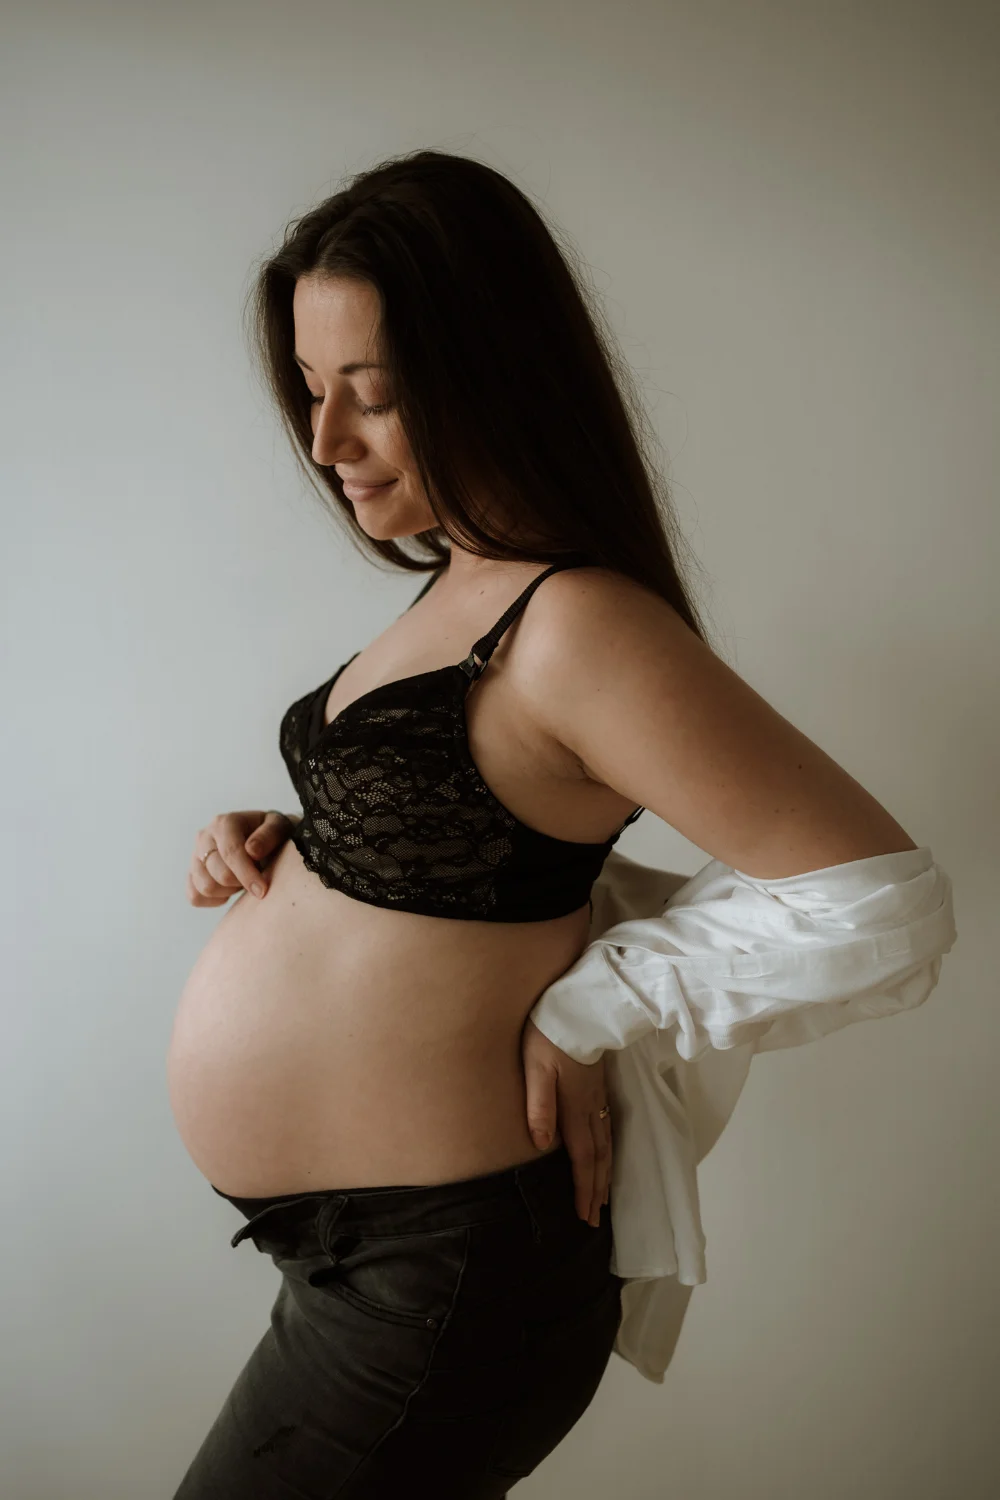 těhotná žena ve spodním prádle hladí své bříško